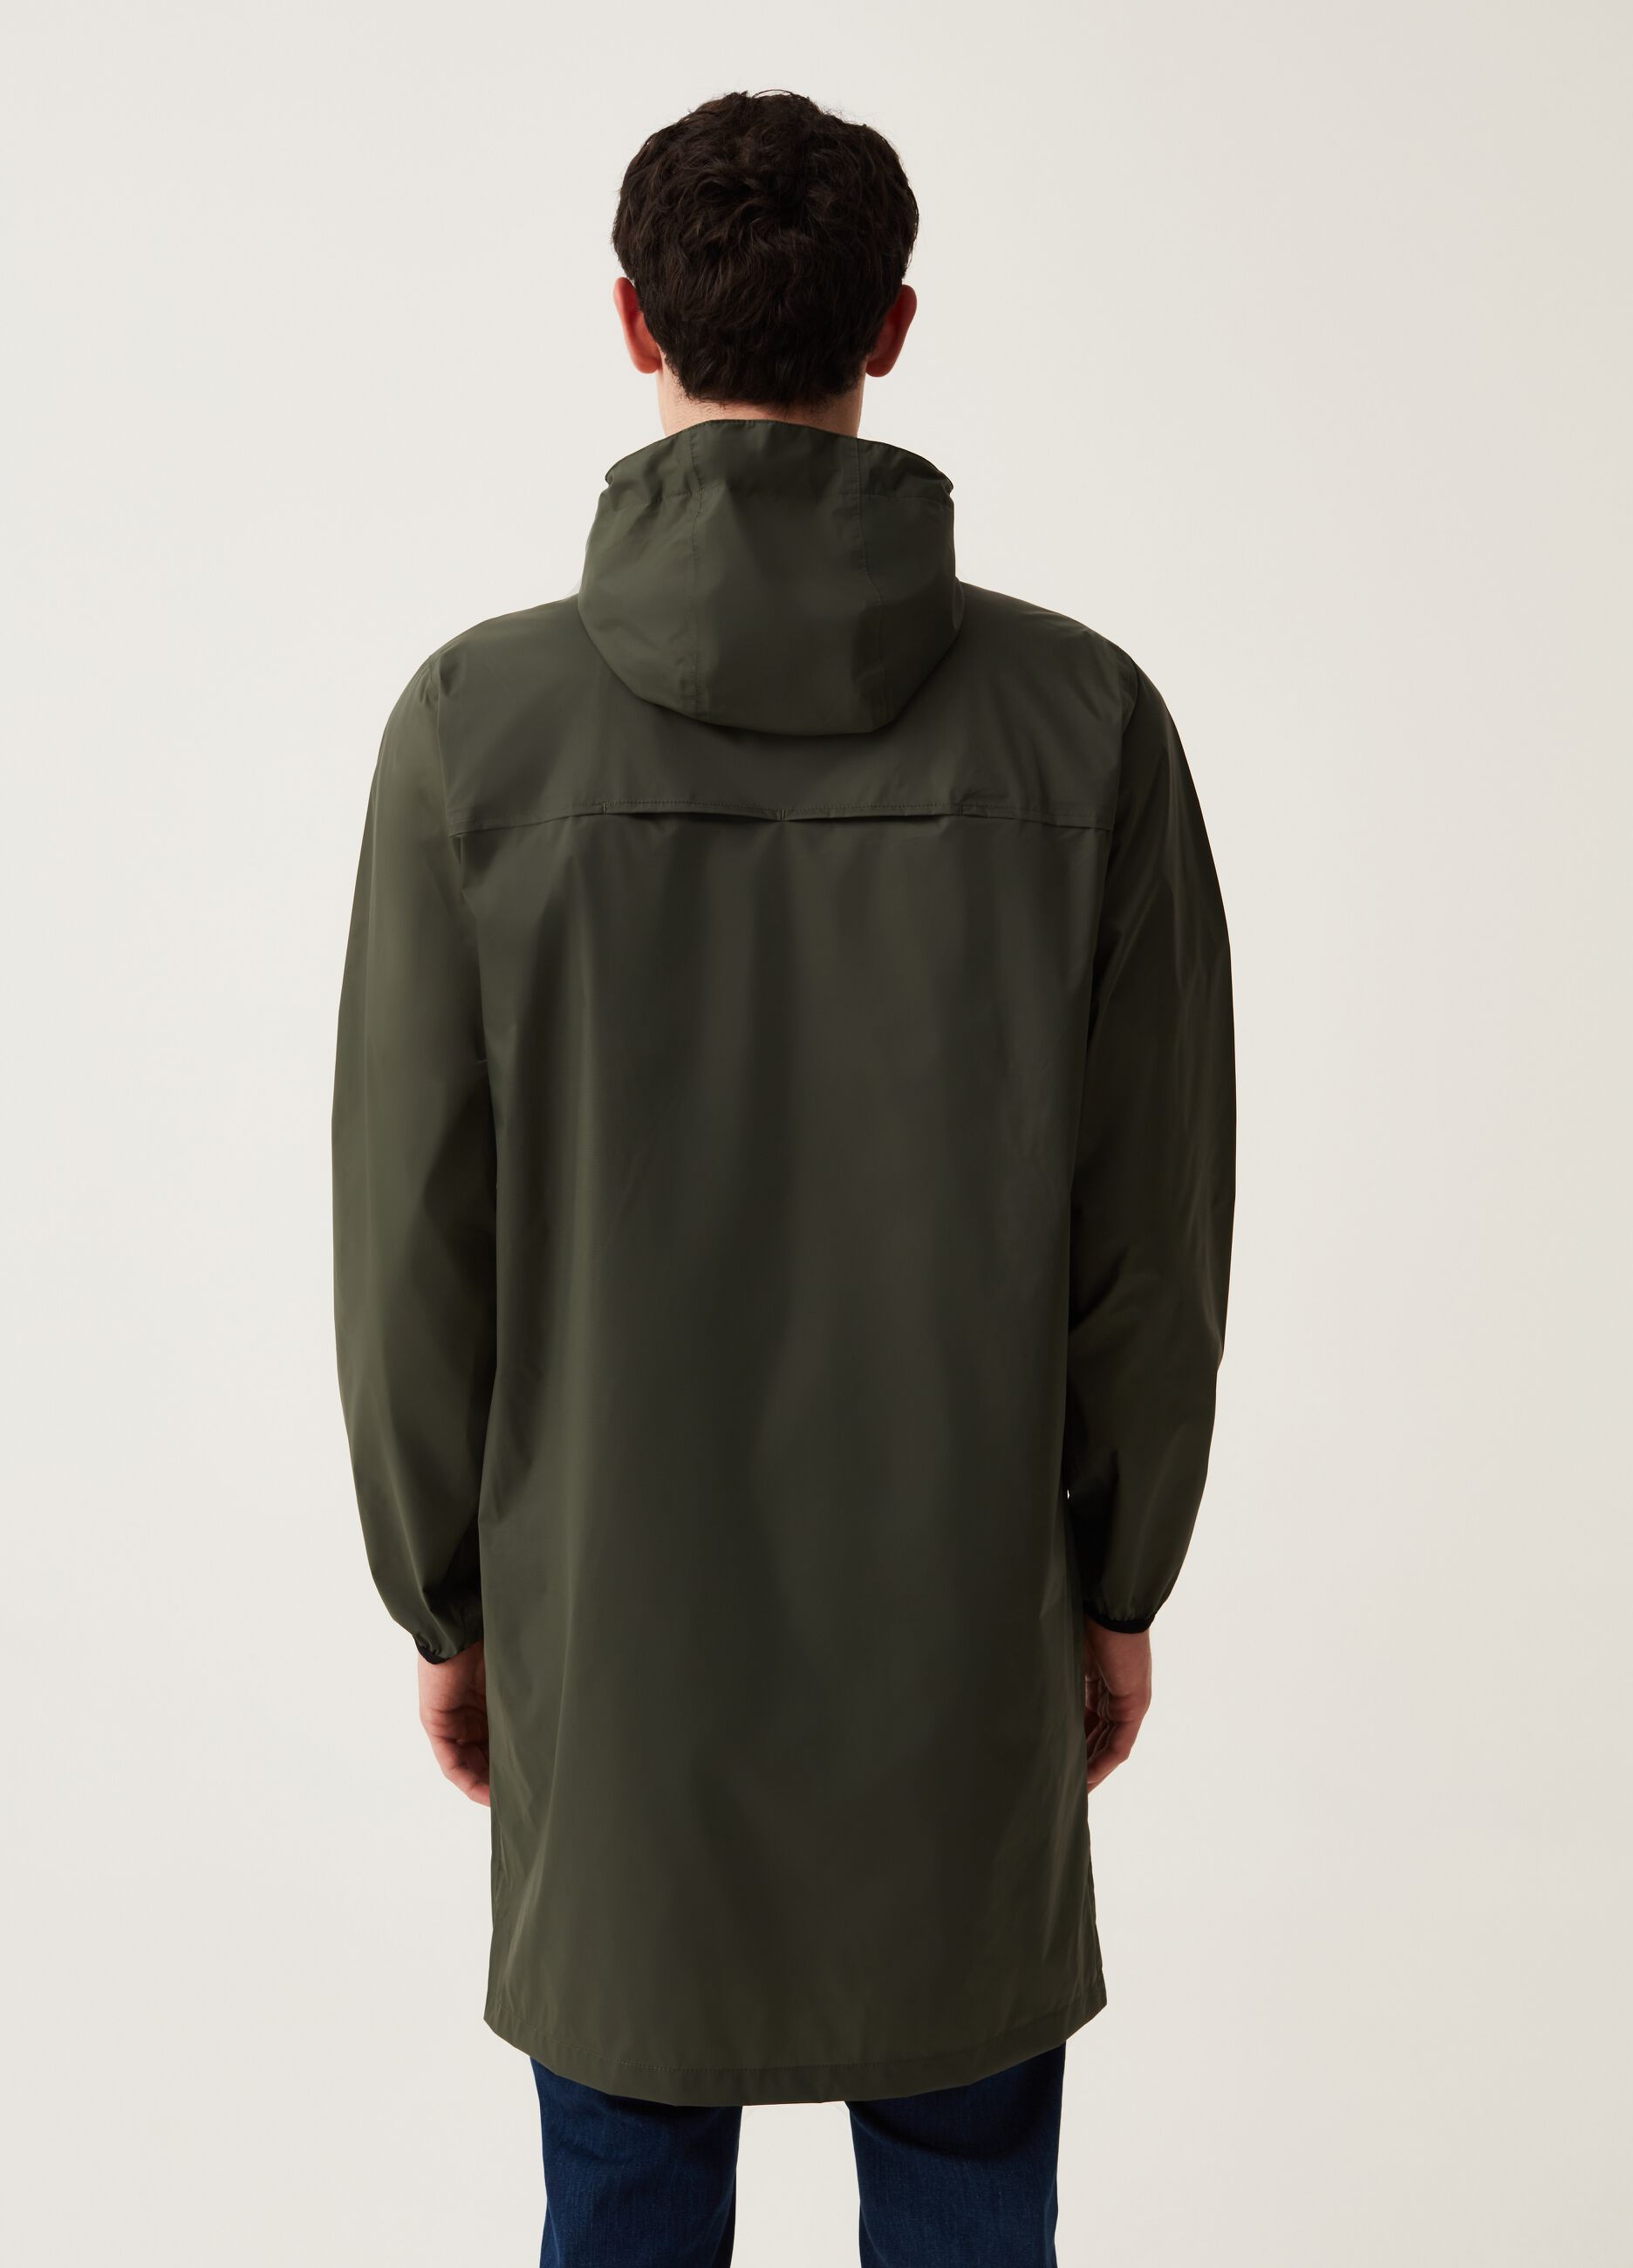 Long waterproof jacket with hood